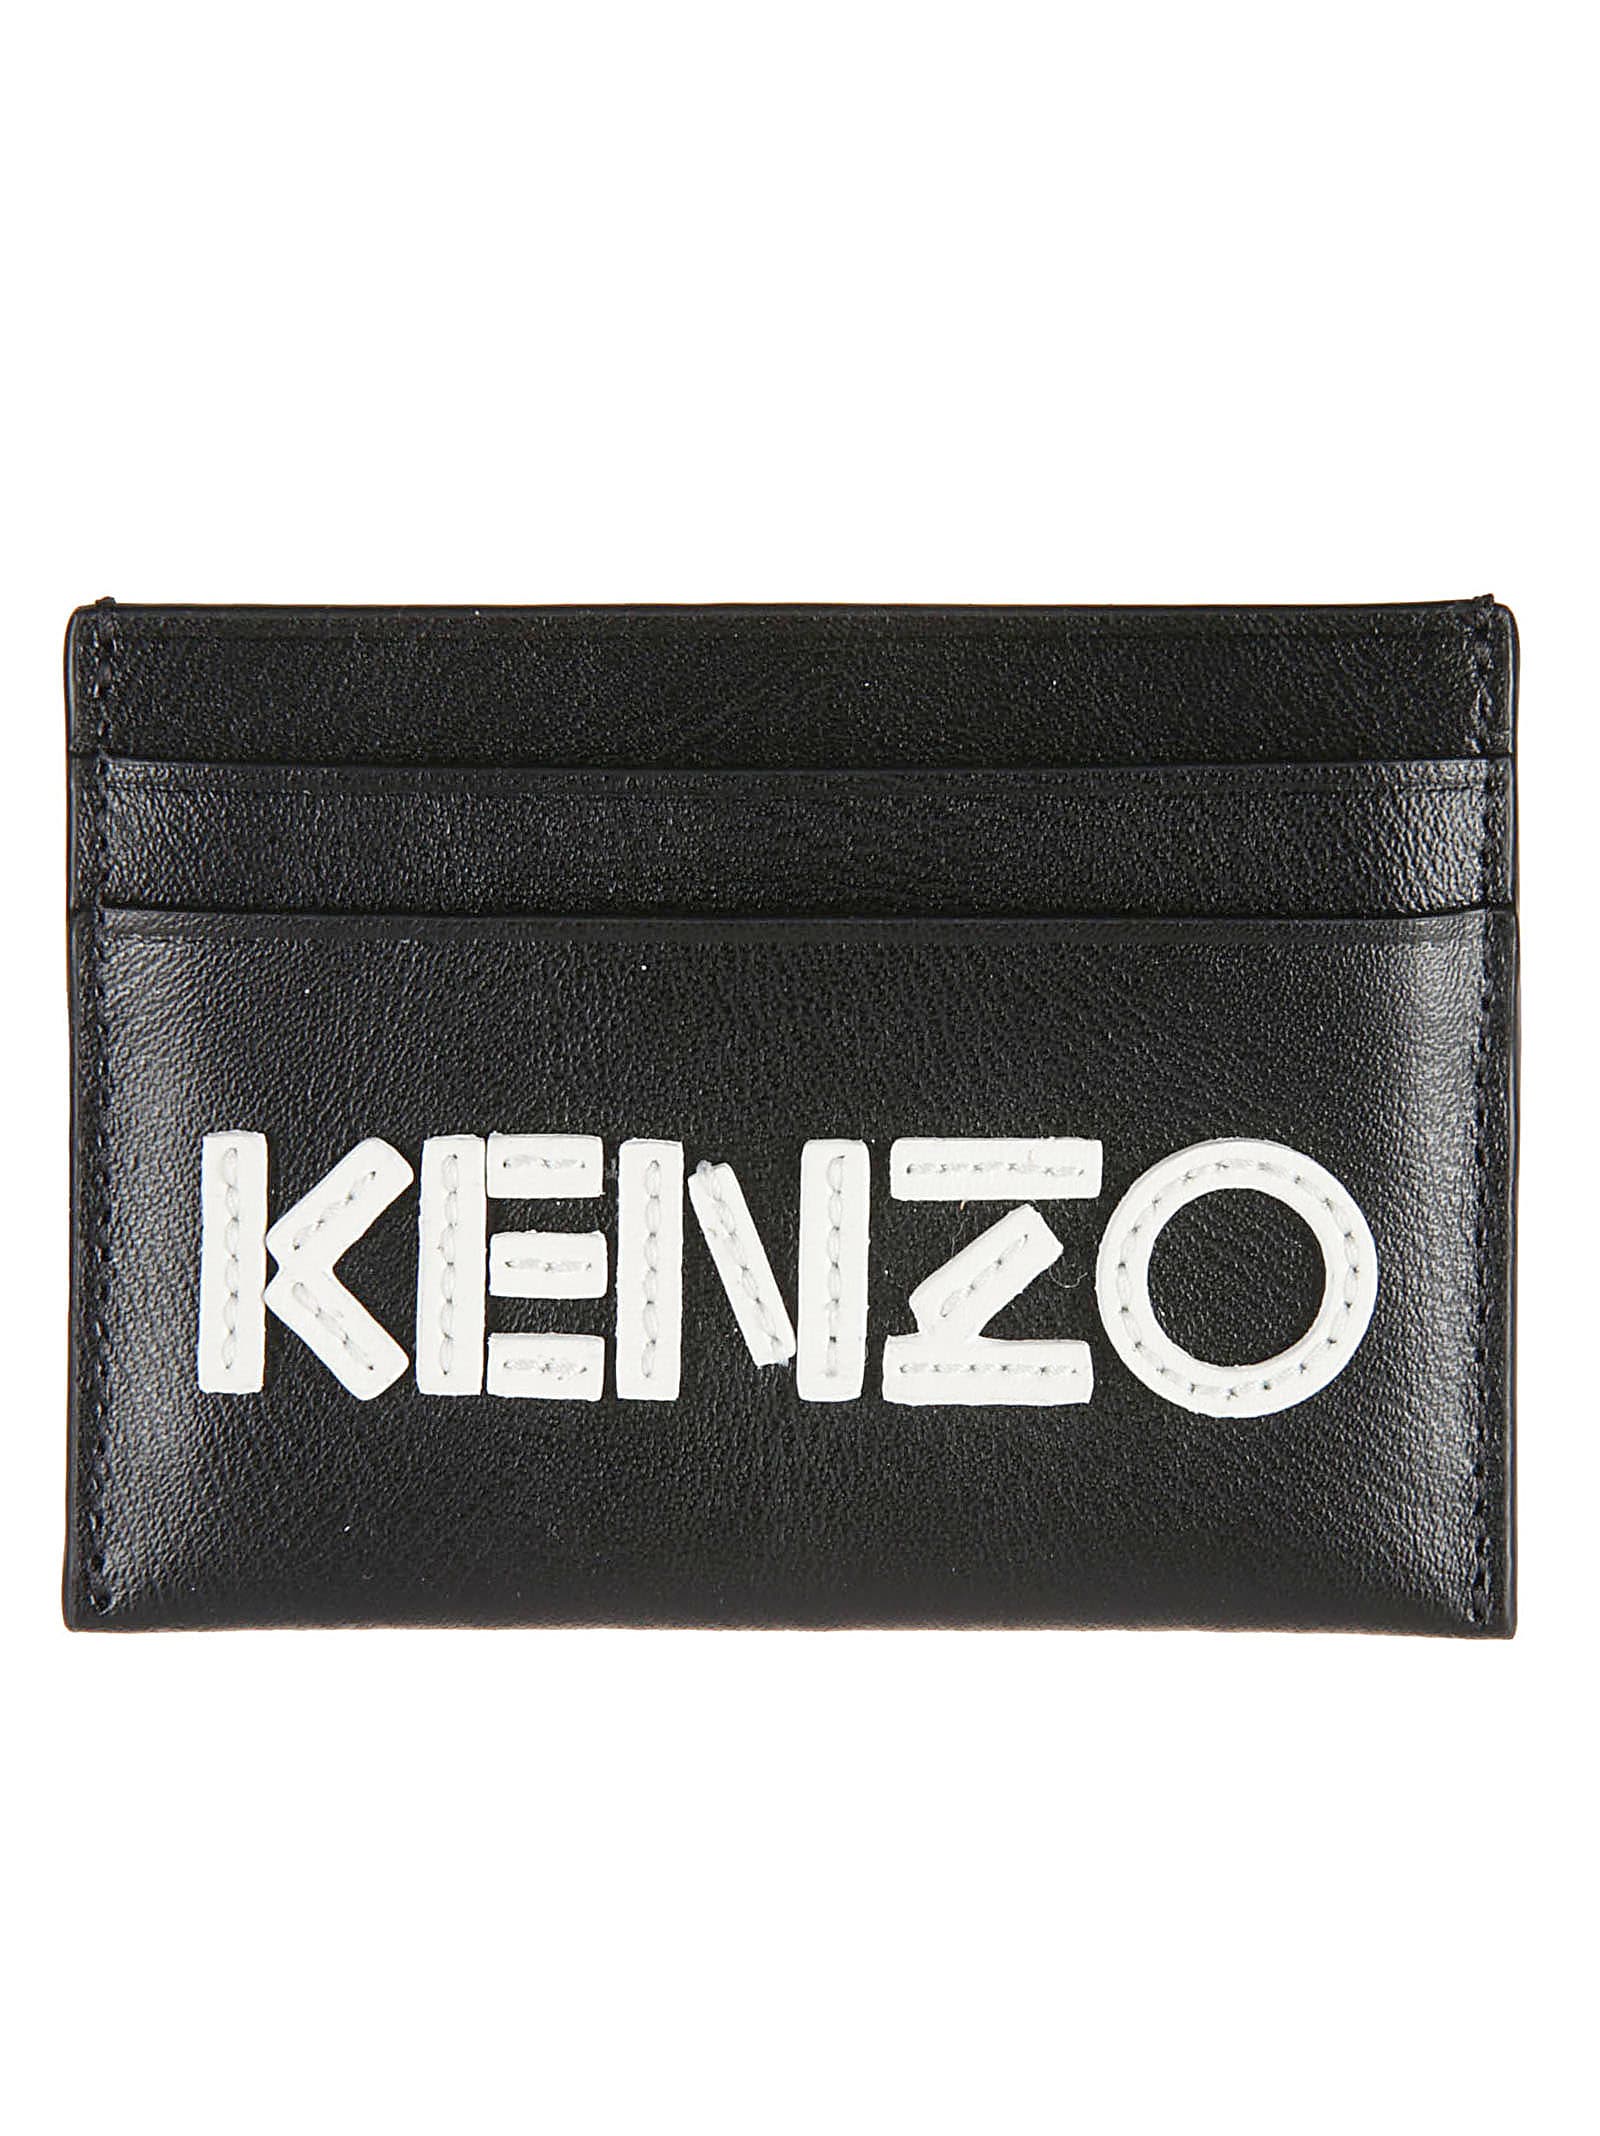 Kenzo Wallets | italist, ALWAYS LIKE A SALE